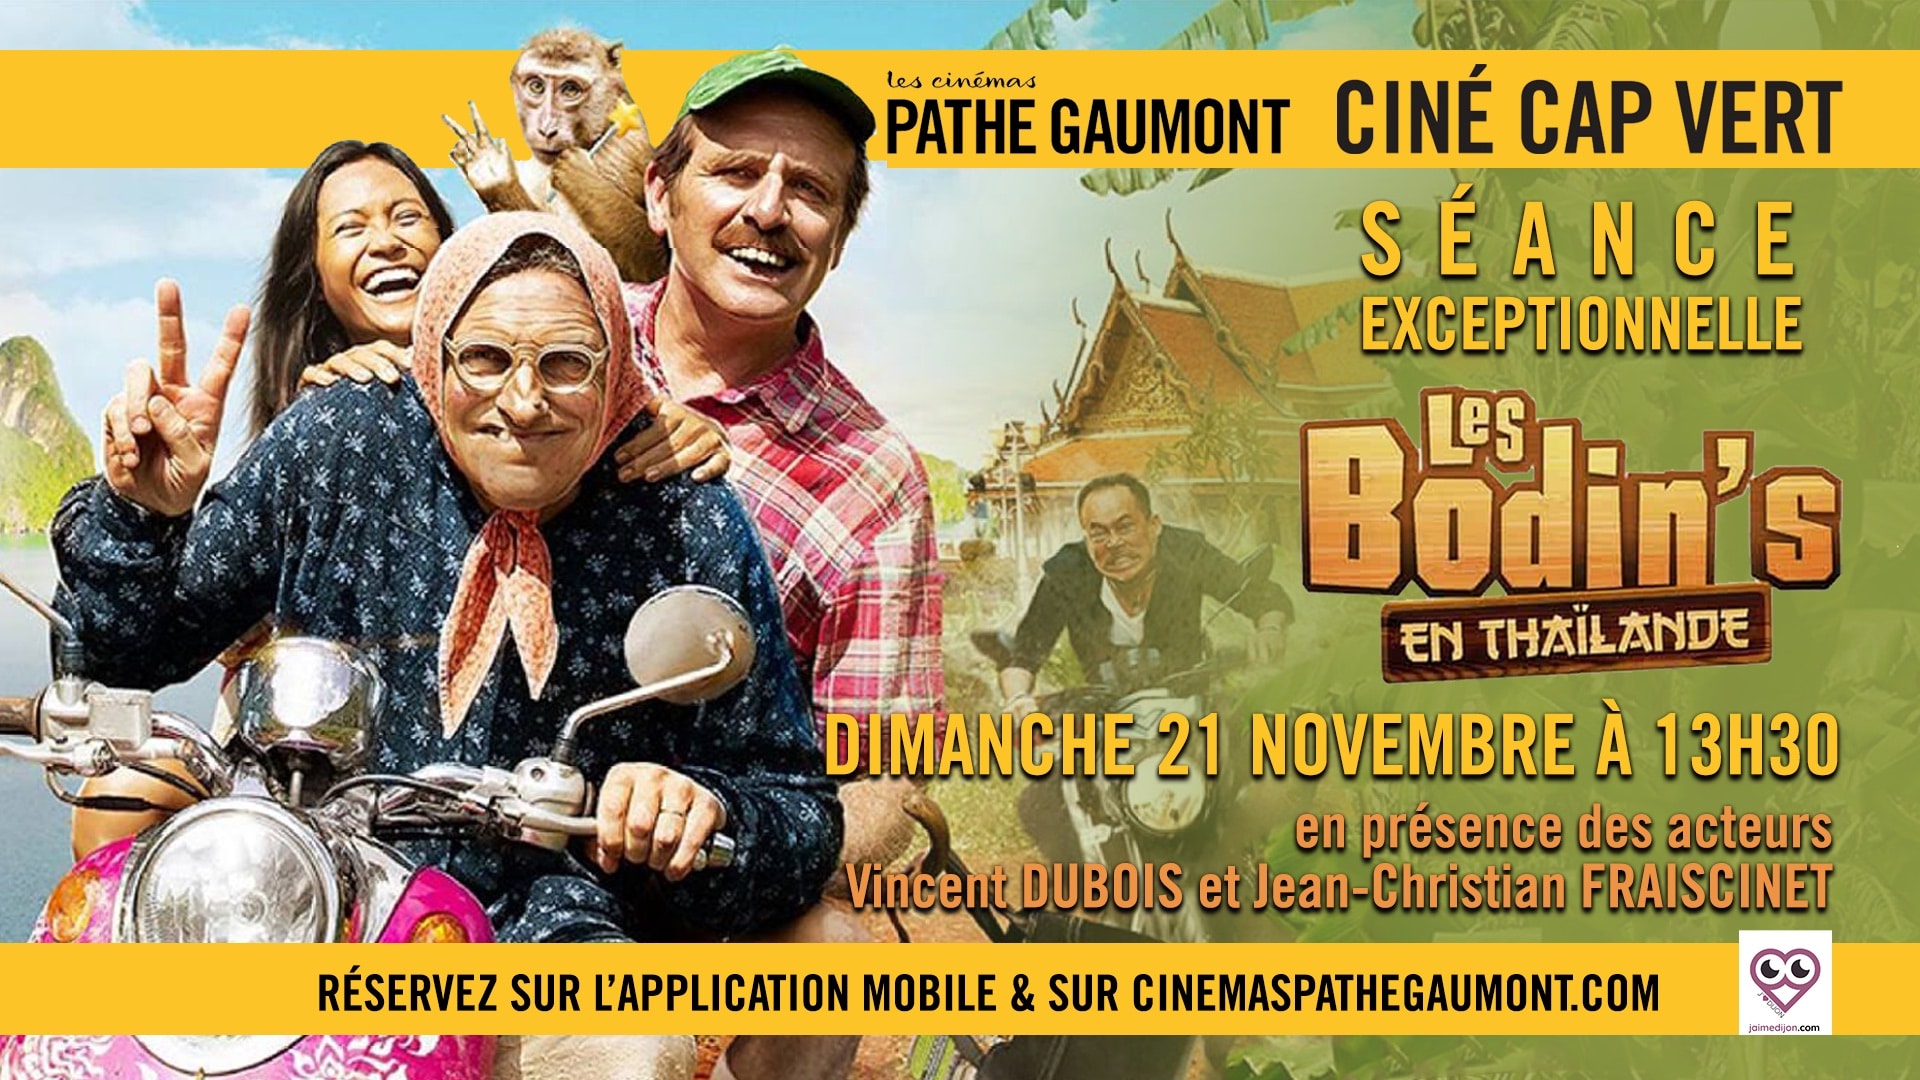 Le duo comique Les Bodin's présent au ciné Cap Vert !